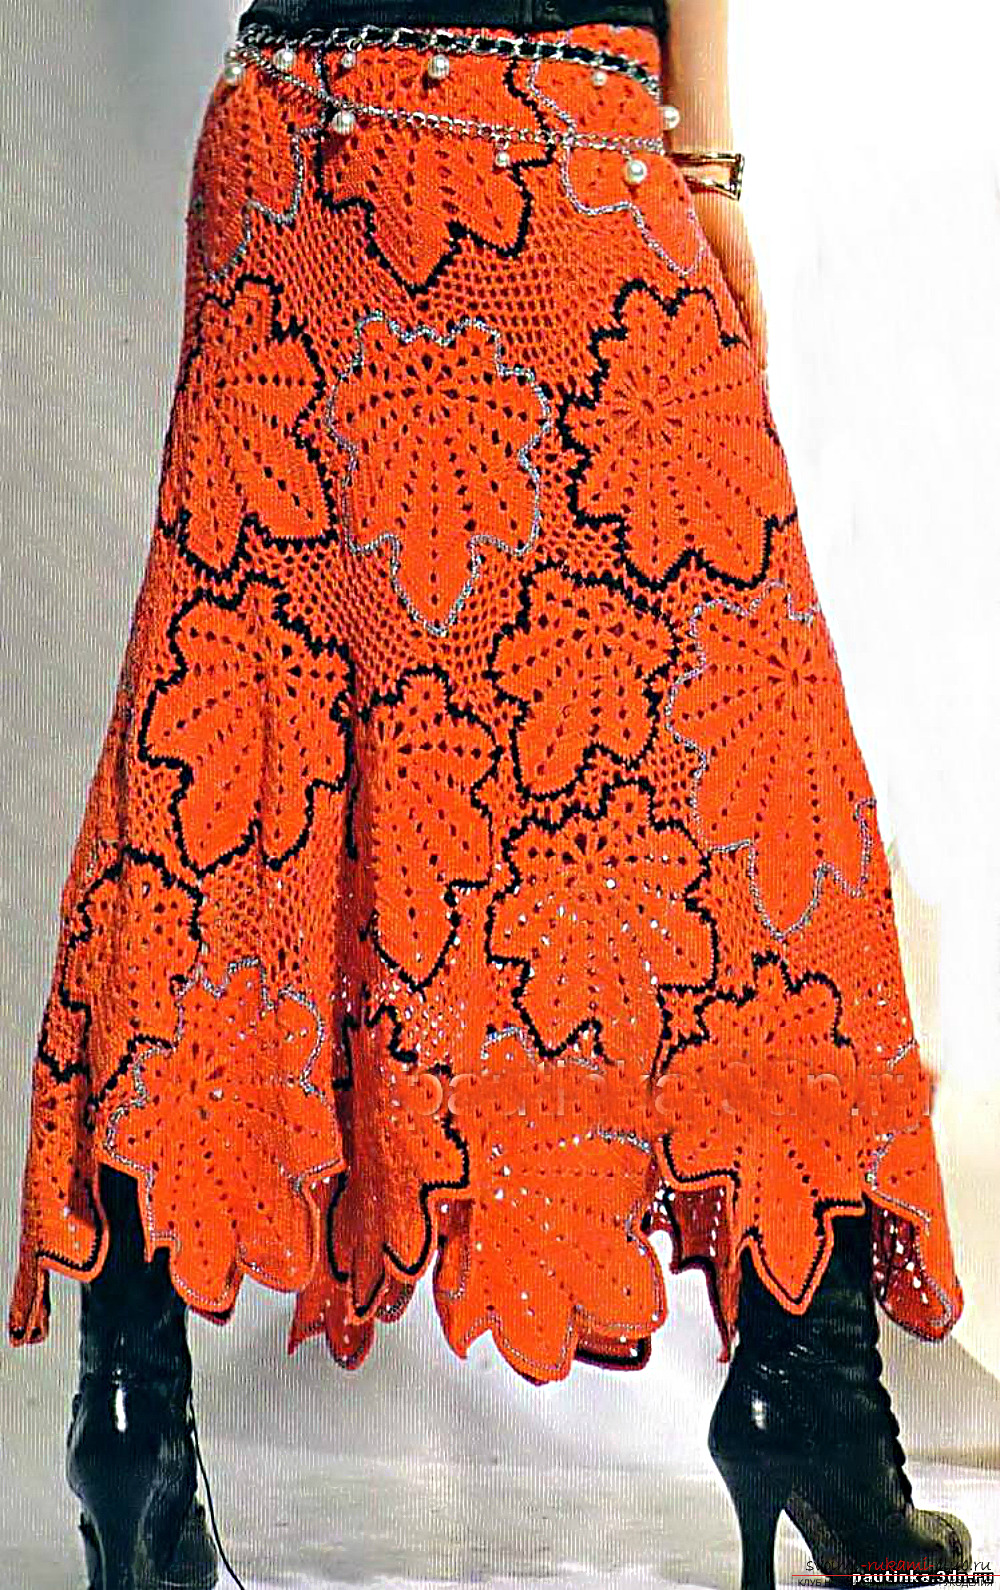 crocheted fashionable fishnet skirt for summer. Photo # 2